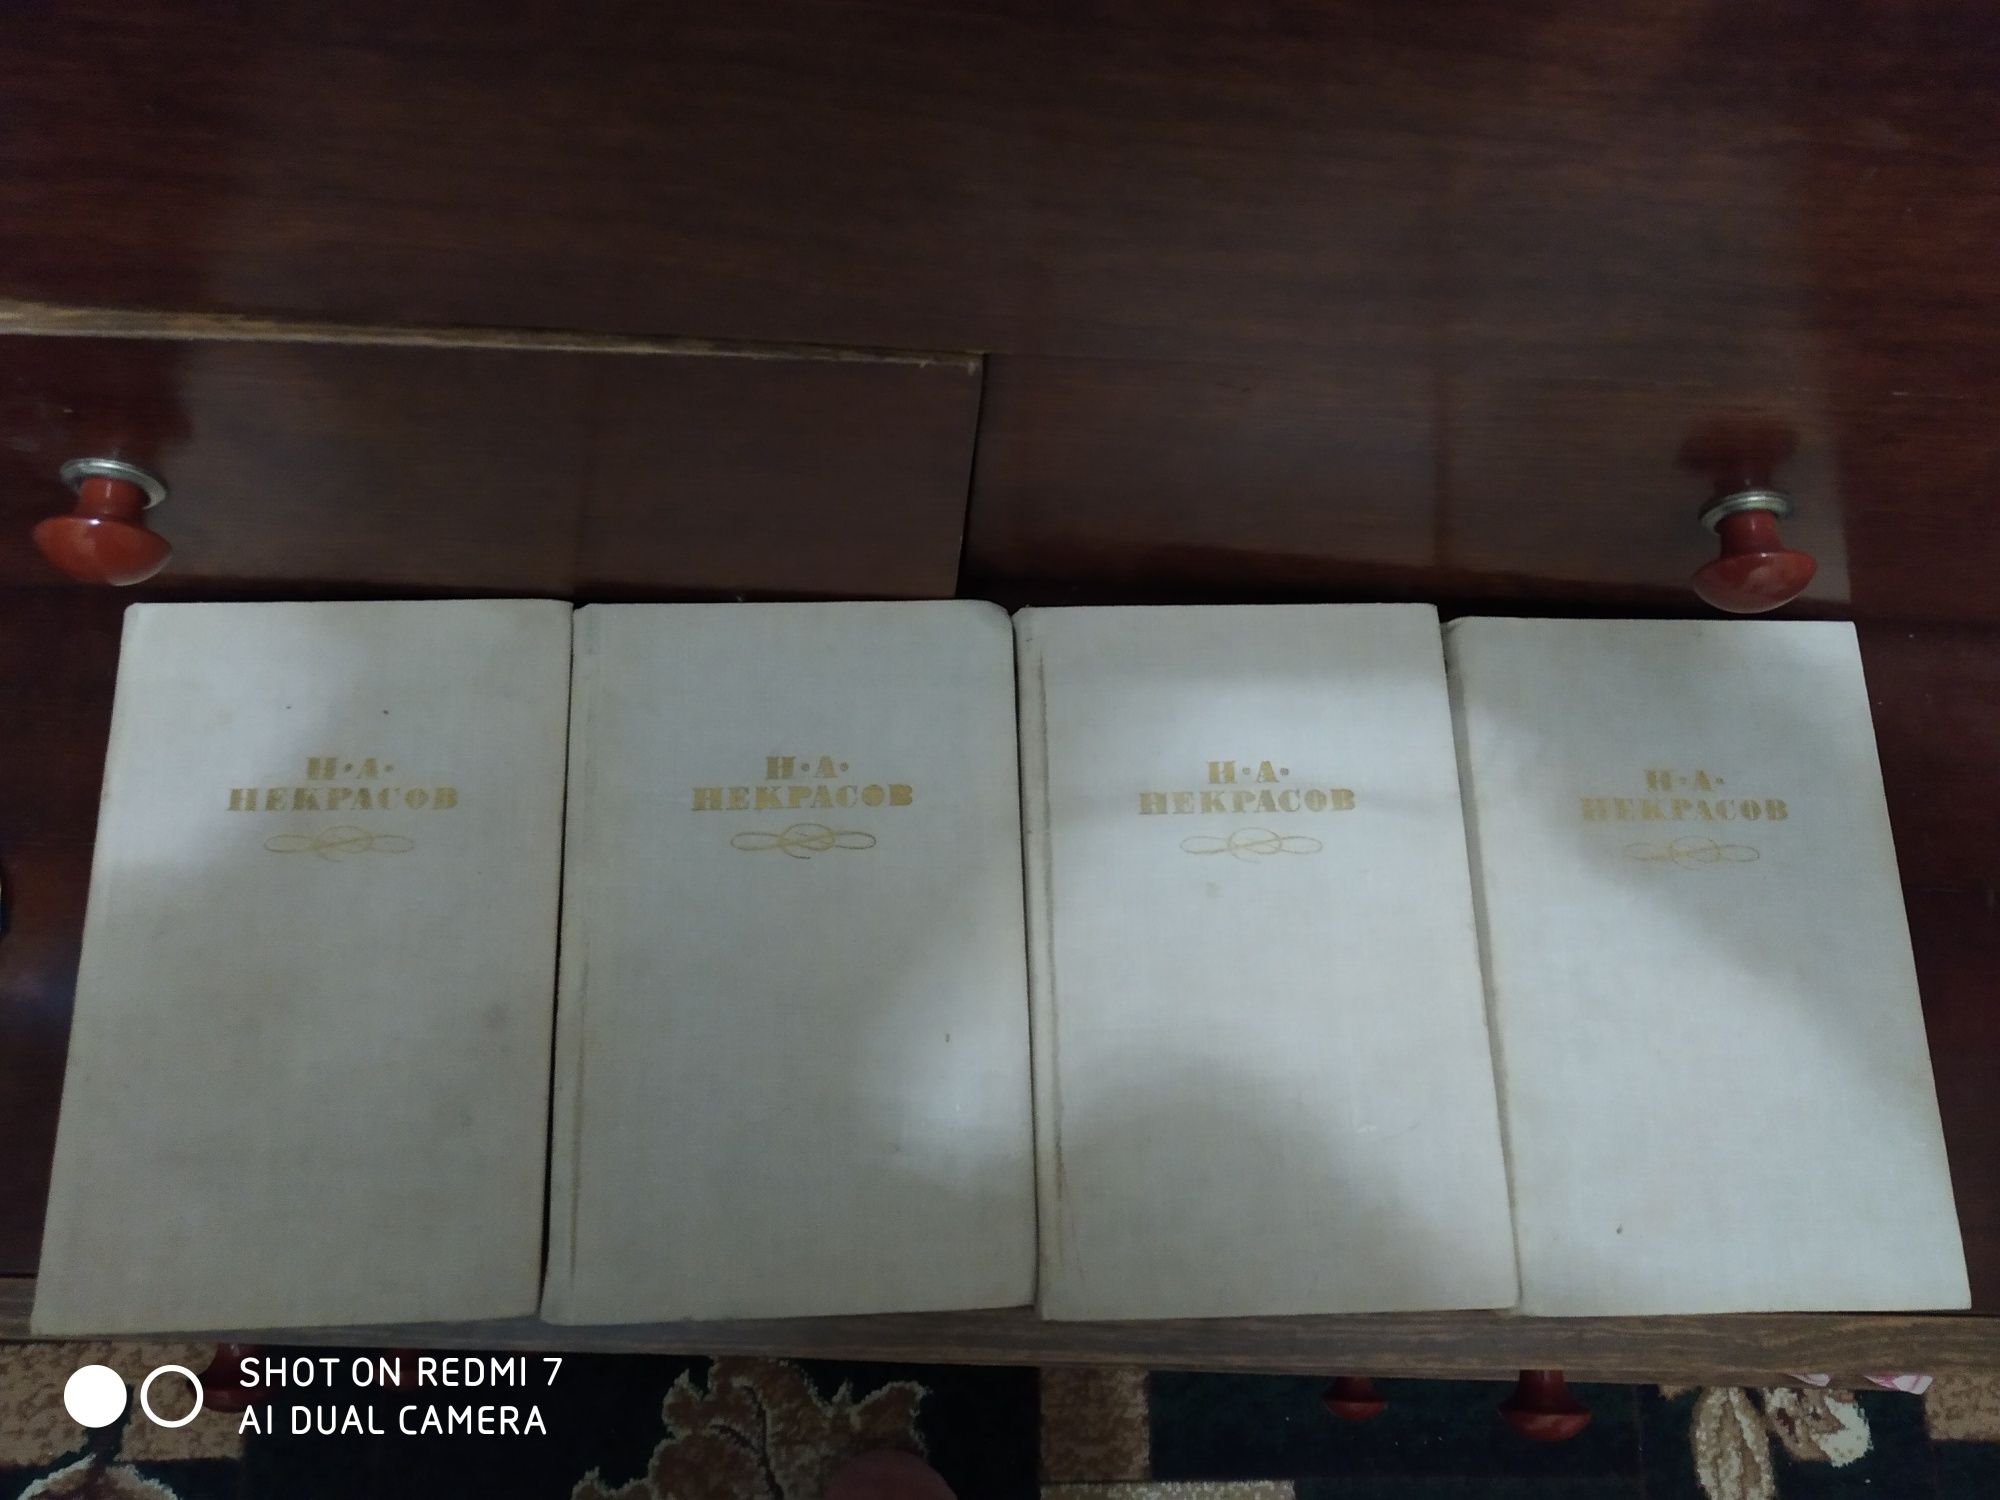 И.А. Некрасов сообщение сочинений в 4 томах